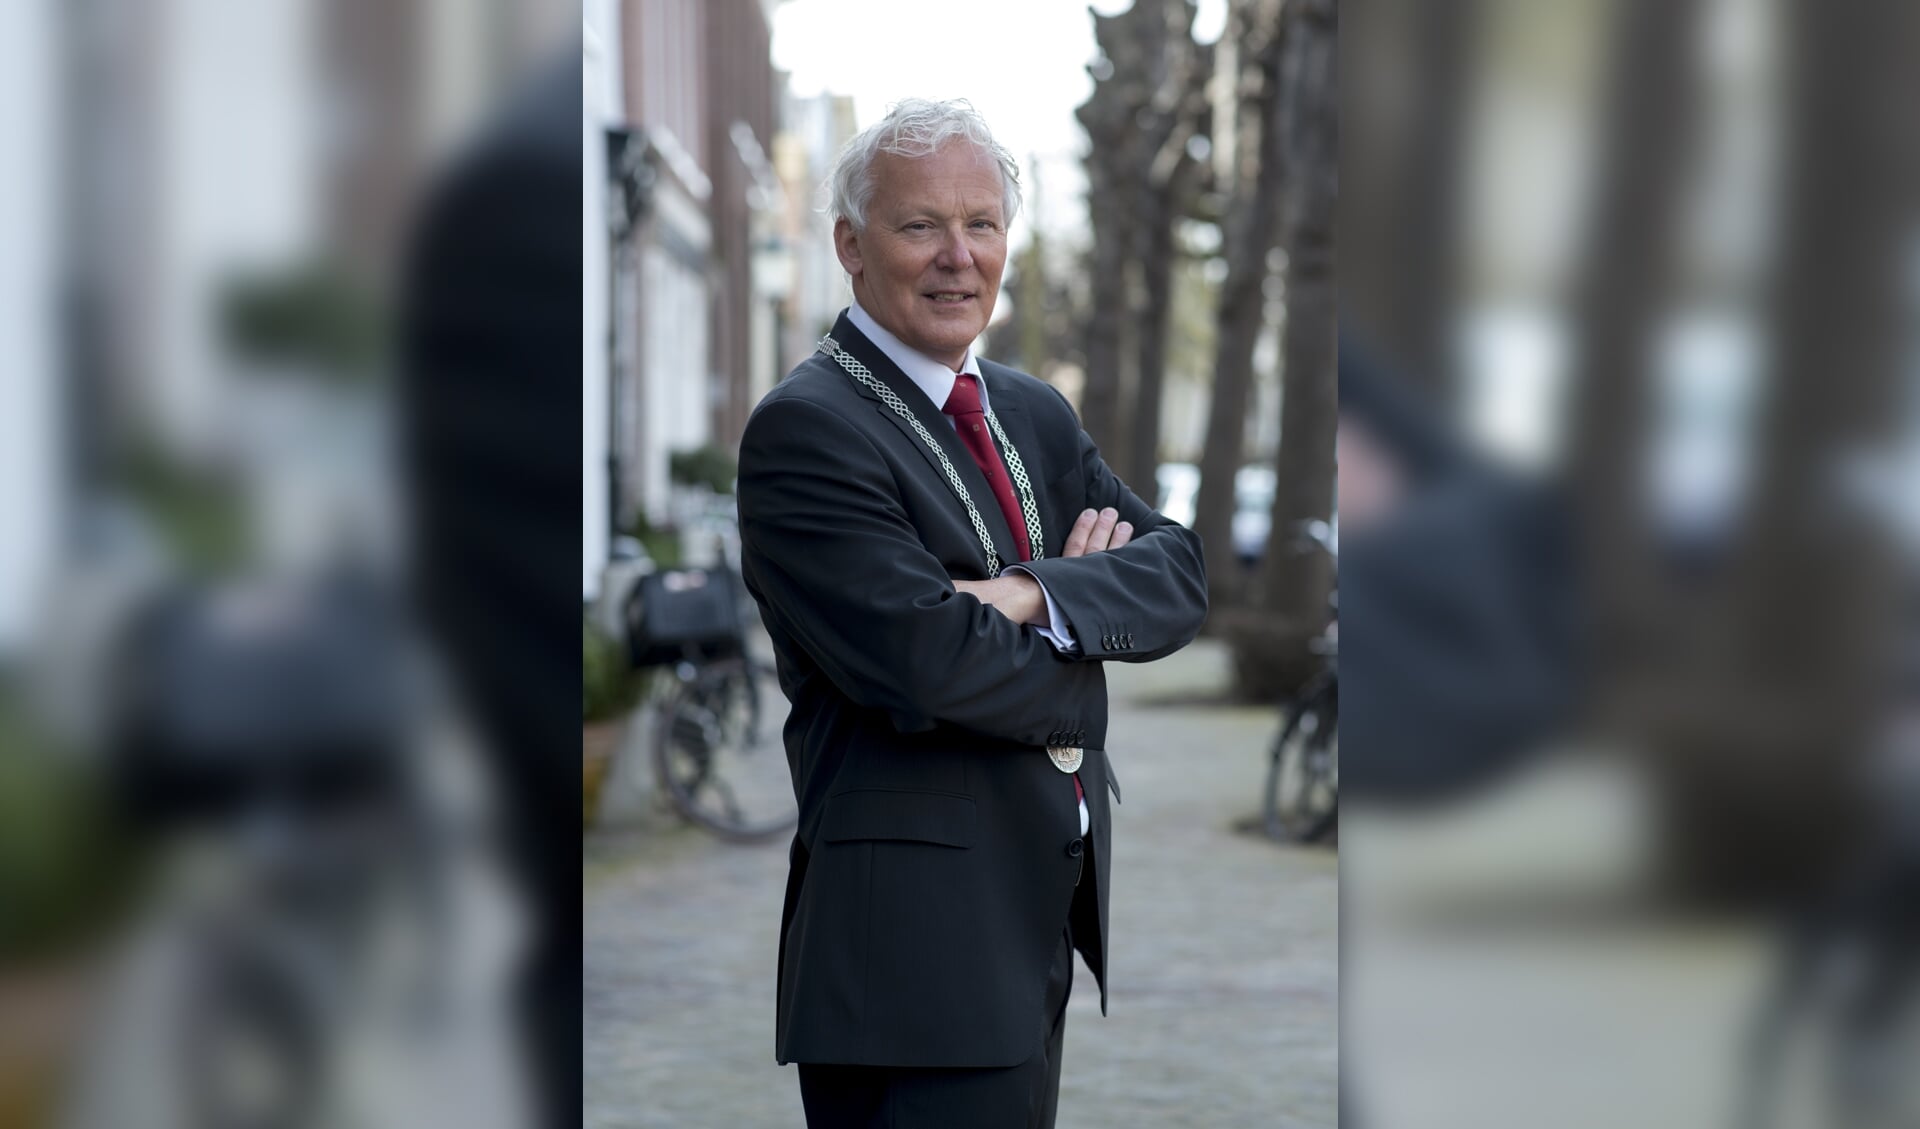 Burgemeester Jan Rijpstra: 'Het college betracht altijd de grootst mogelijke zorgvuldigheid'. | Foto: Monica Stuurop